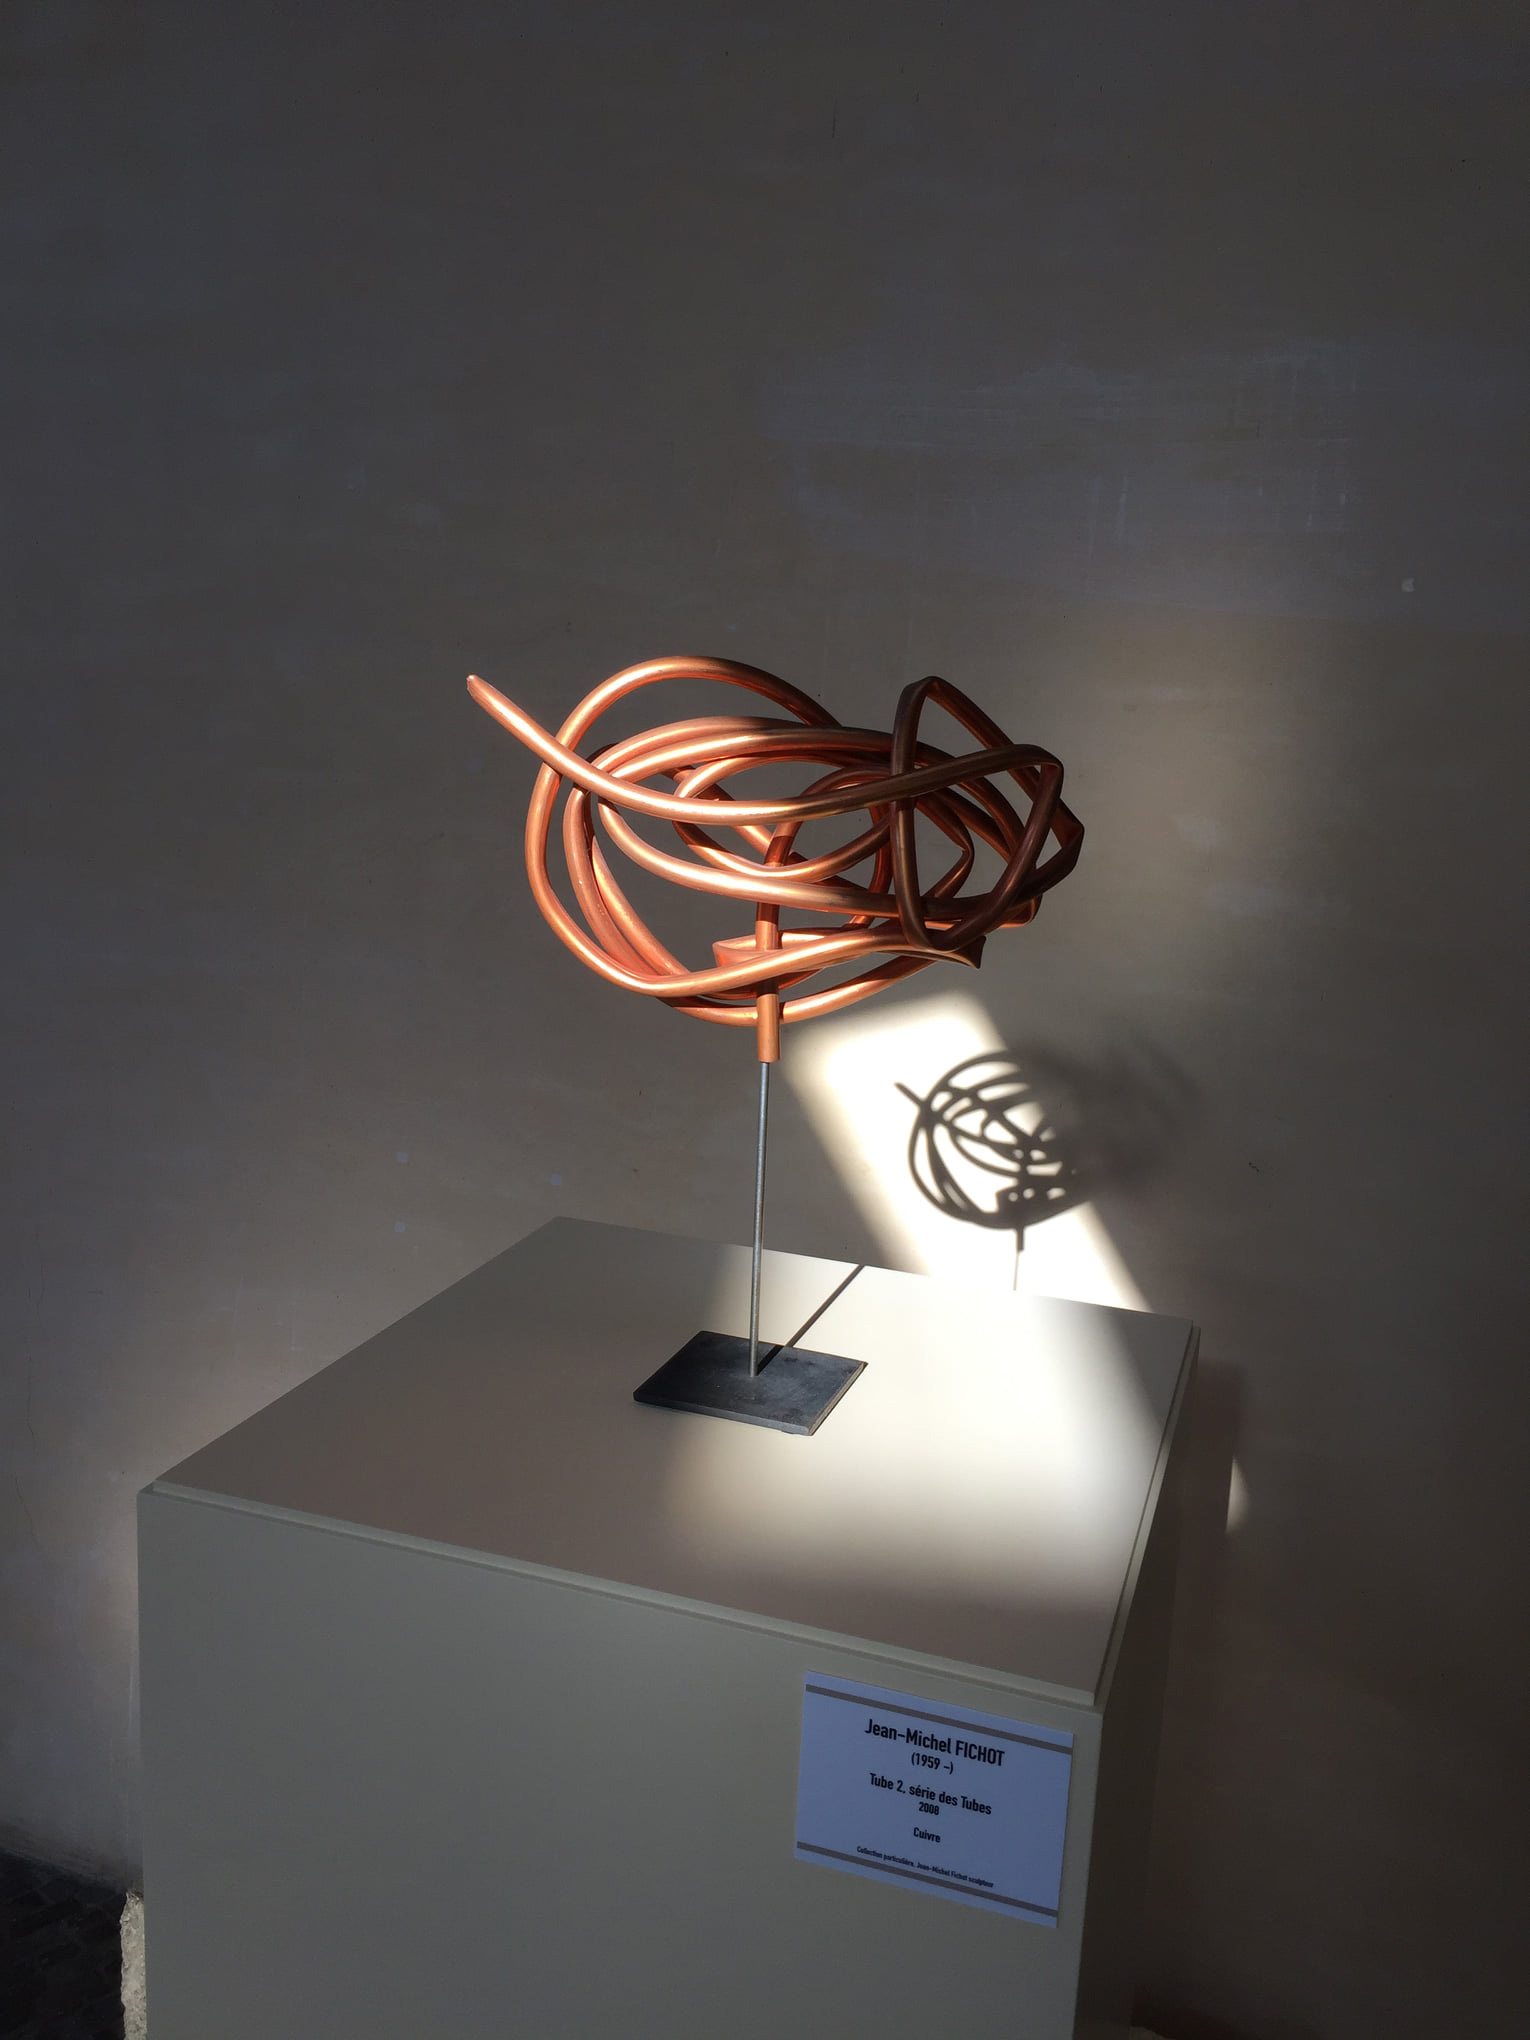 Exposition de fer et d’acier, Musée de la Fondation de Coubertin 2021